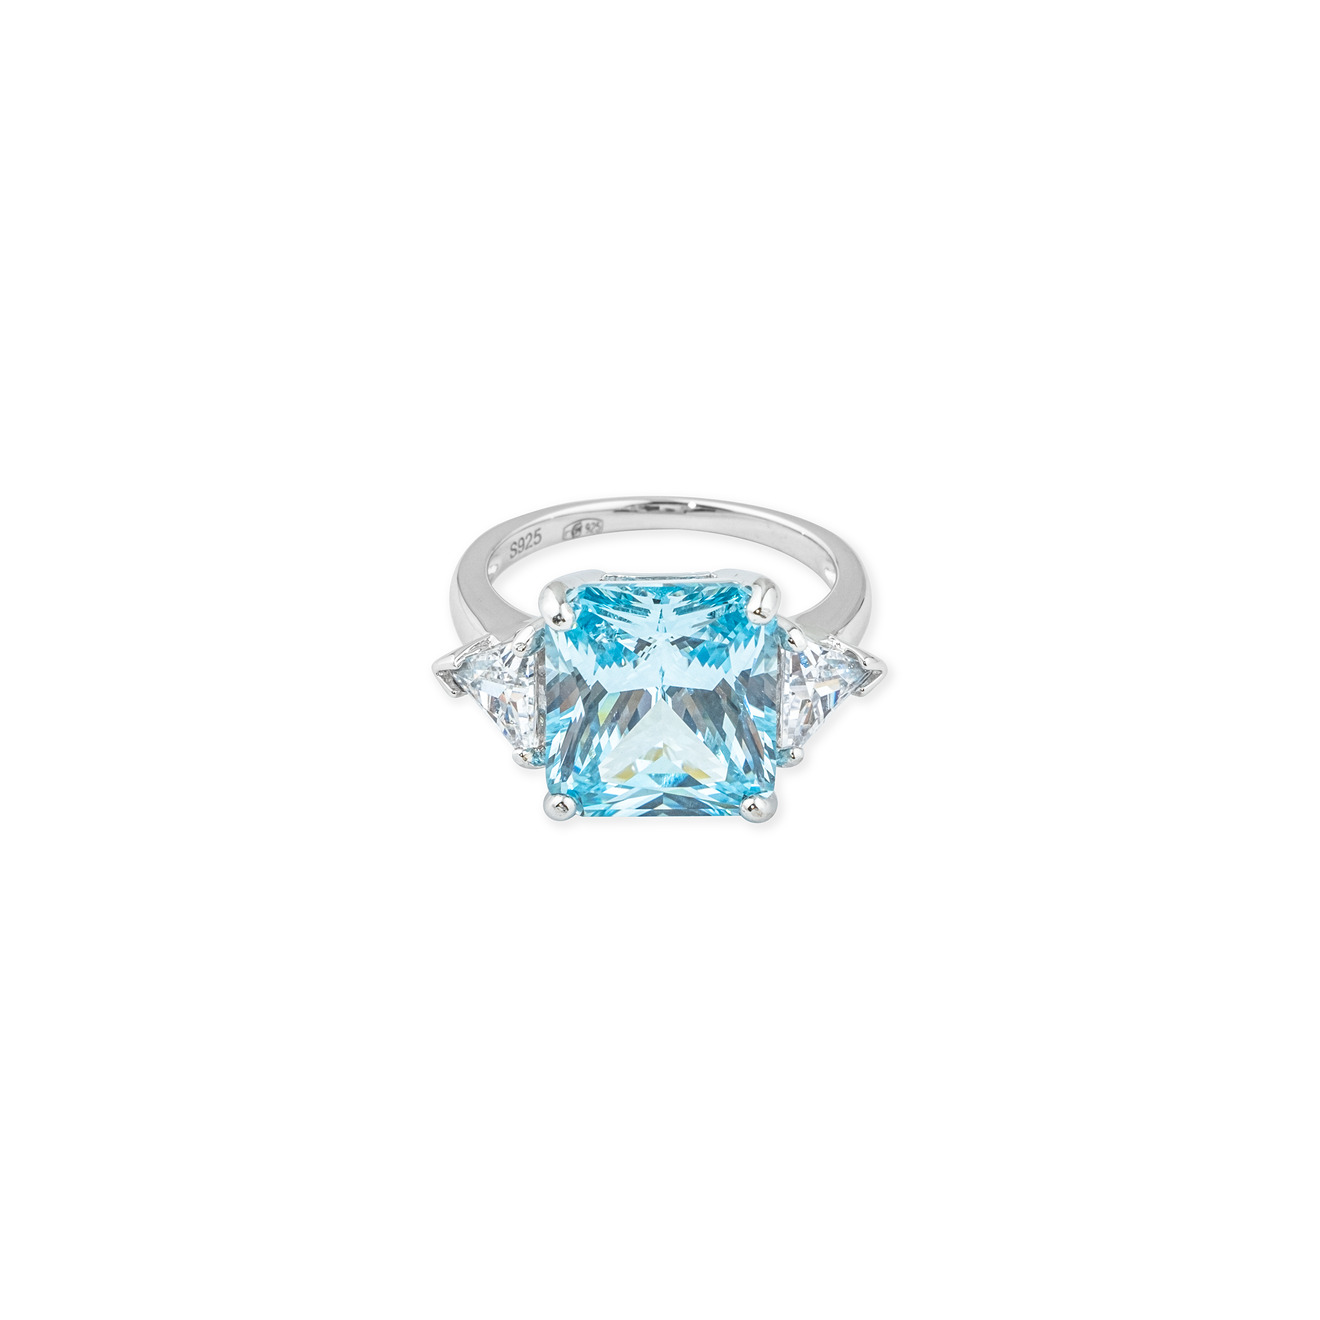 holy silver серебряное кольцо с голубым кристаллом и паве из белых кристаллов Holy Silver Серебряное кольцо с голубым кристаллом ступенчатой огранки